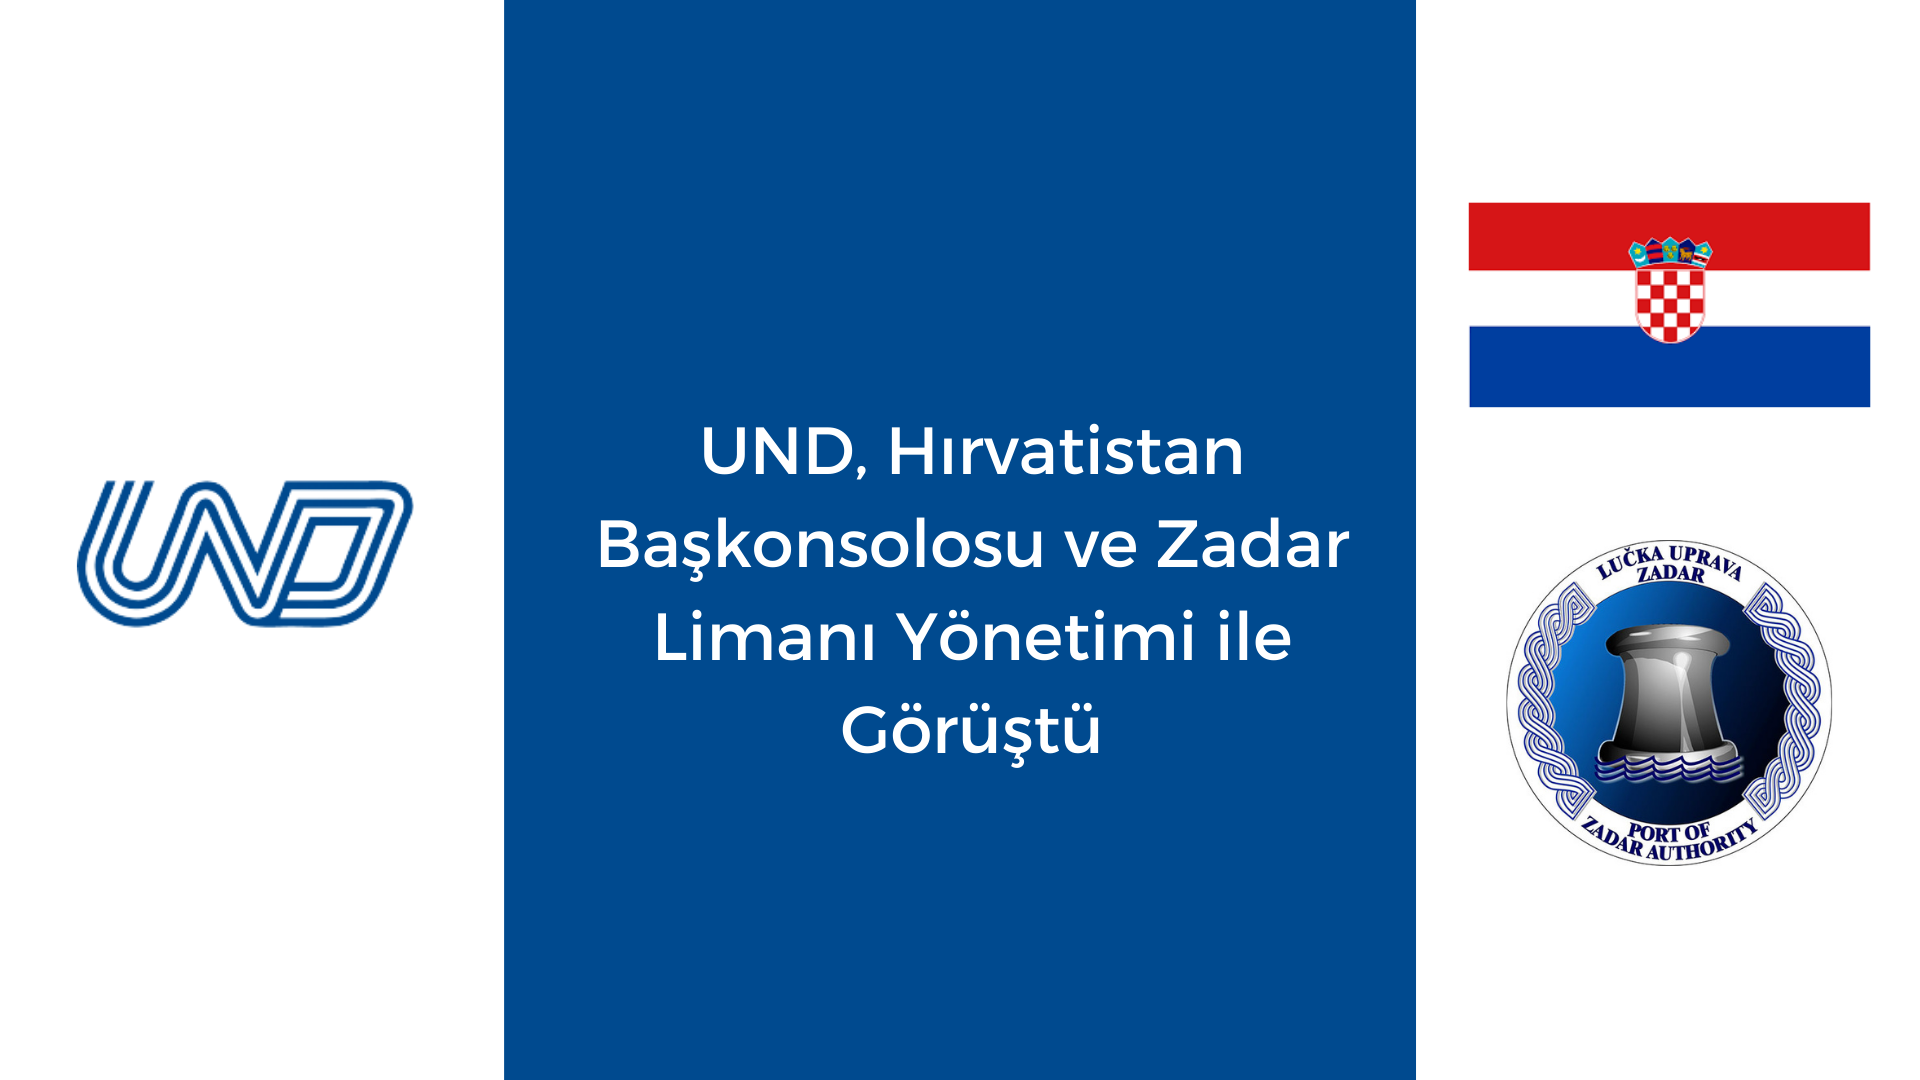 UND, Hırvatistan Başkonsolosu ve Zadar Limanı Yönetimi ile Görüştü